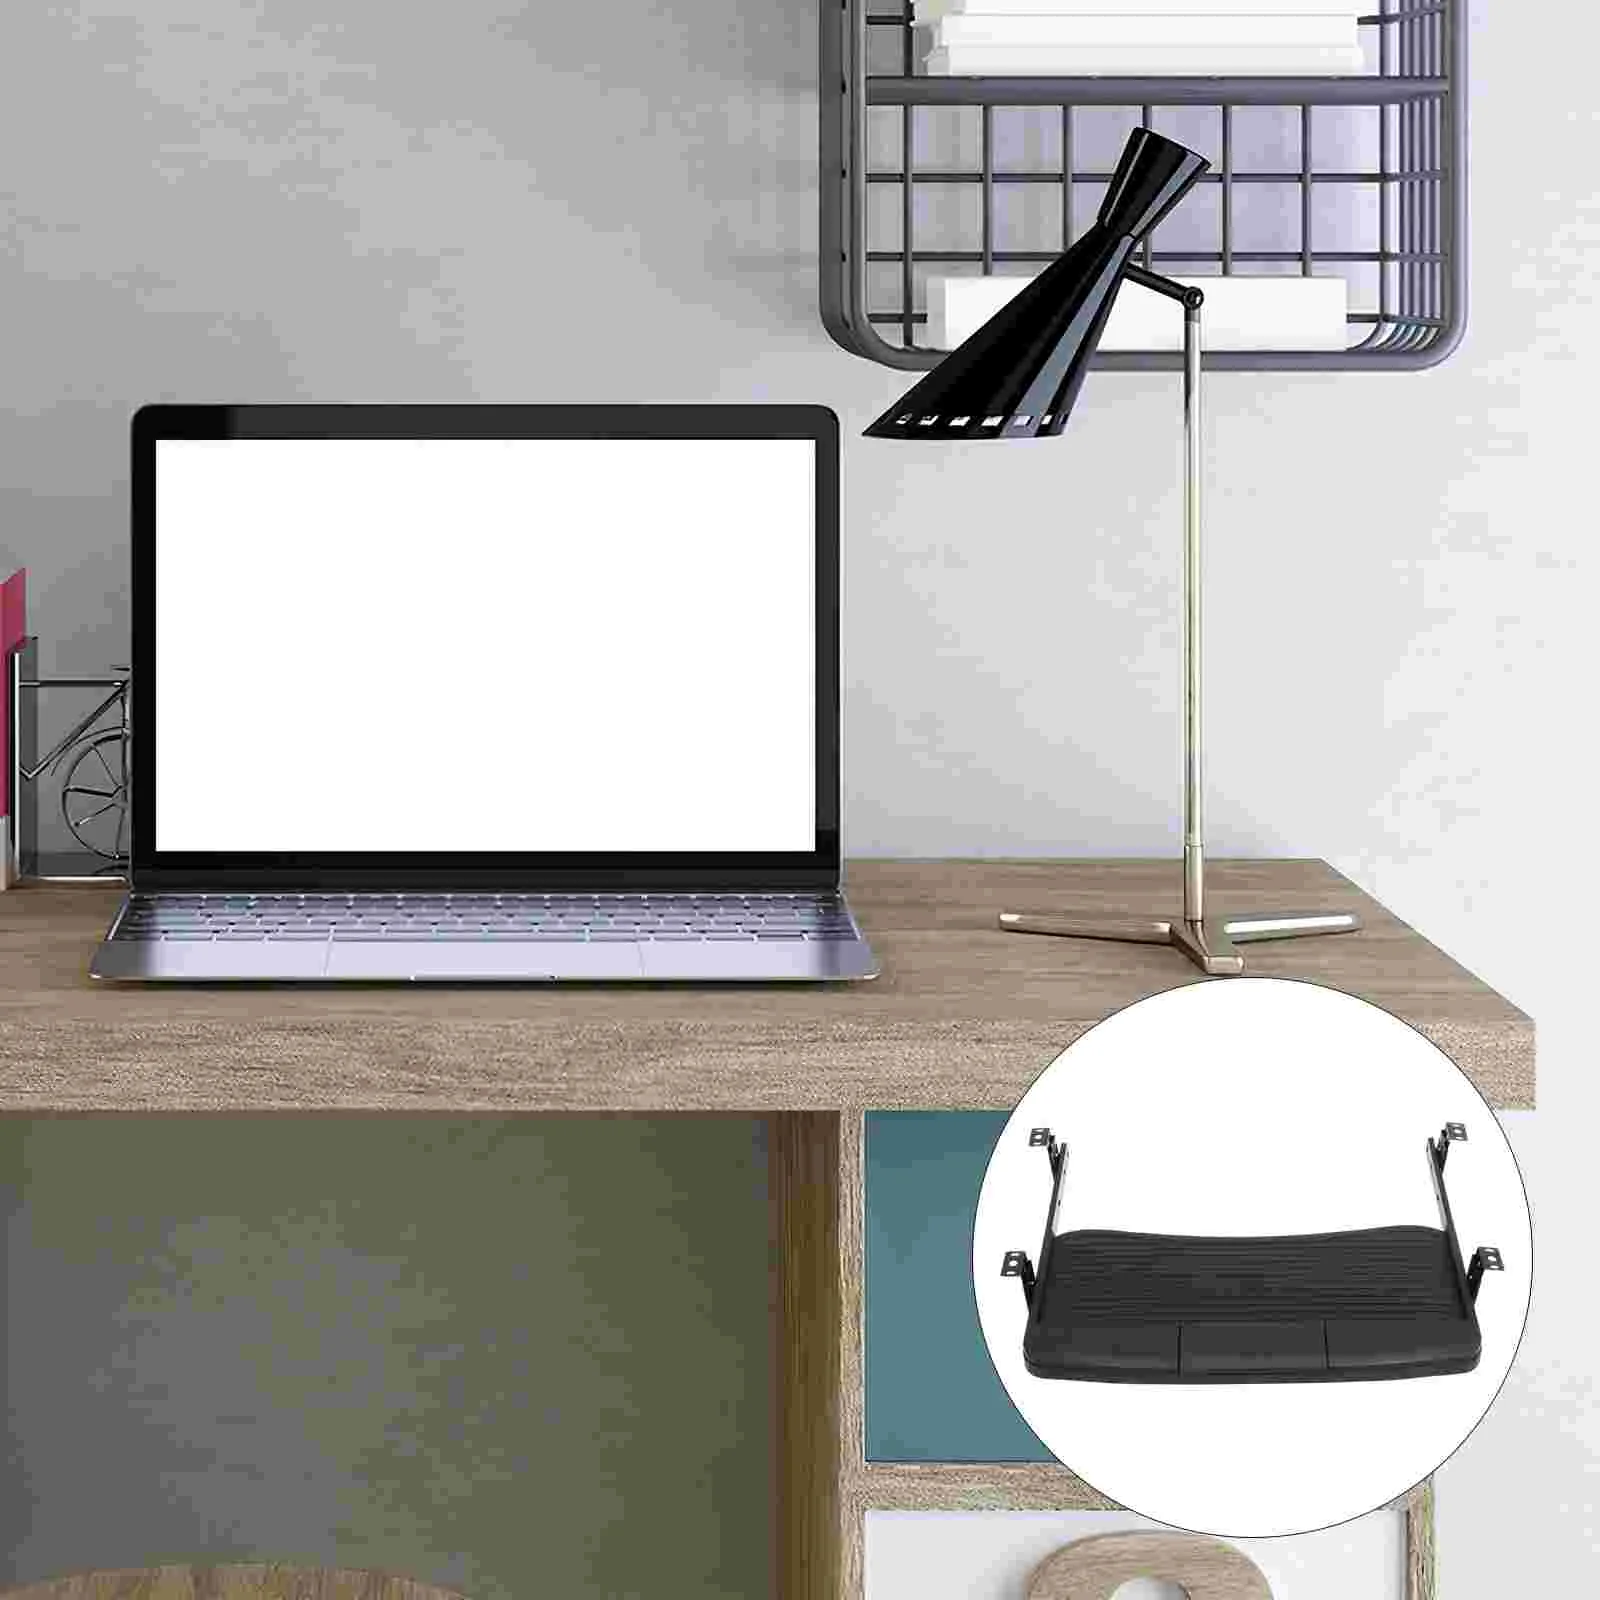 

Подставка под клавиатуру, эргономичная Выдвижная платформа для компьютерной мыши и клавиатуры, Черная